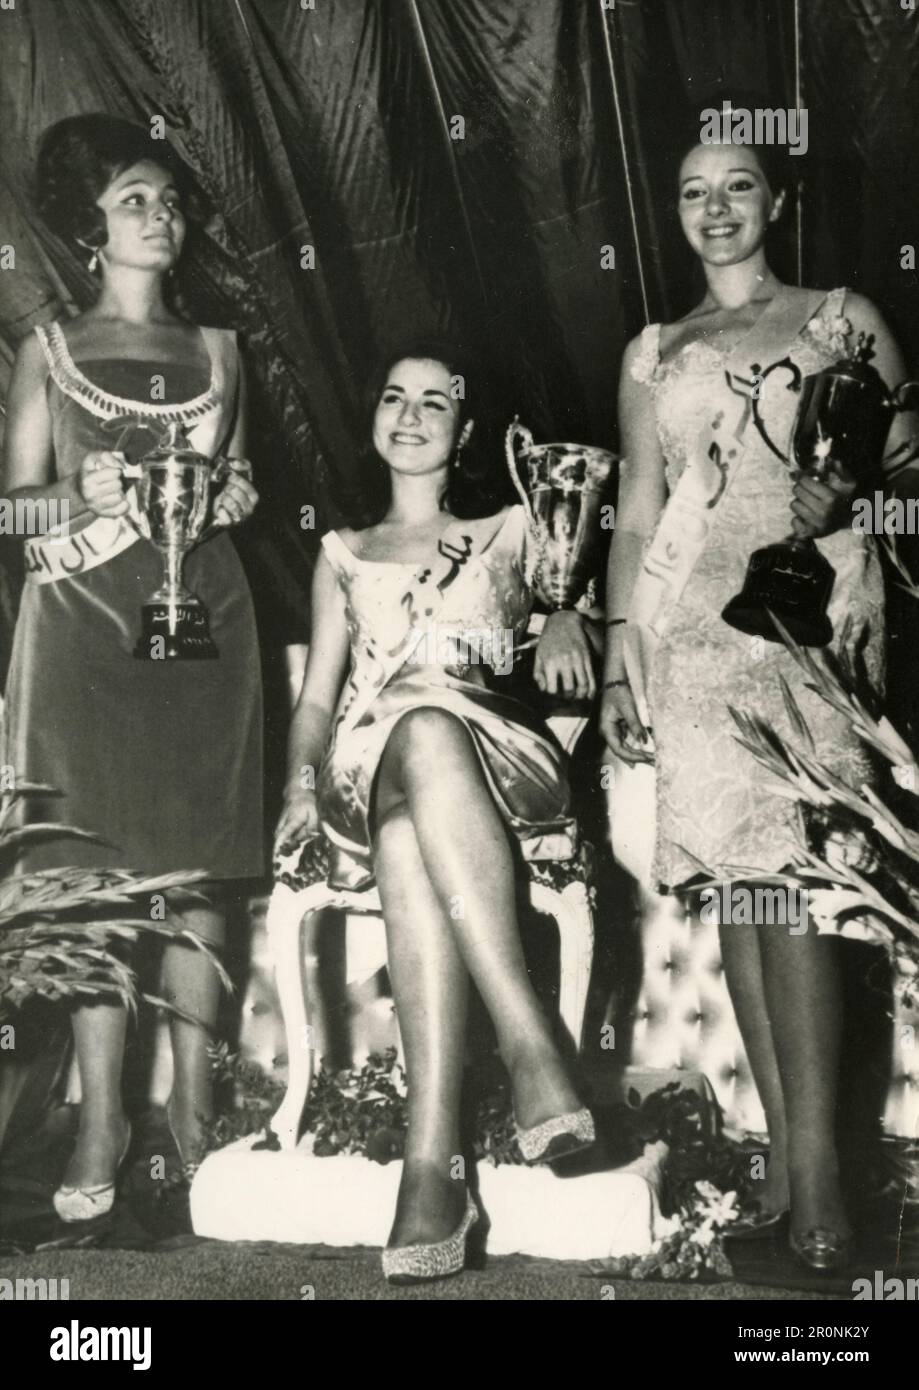 Le prime tre regine di bellezza di un concorso arabo, 1965 Foto Stock